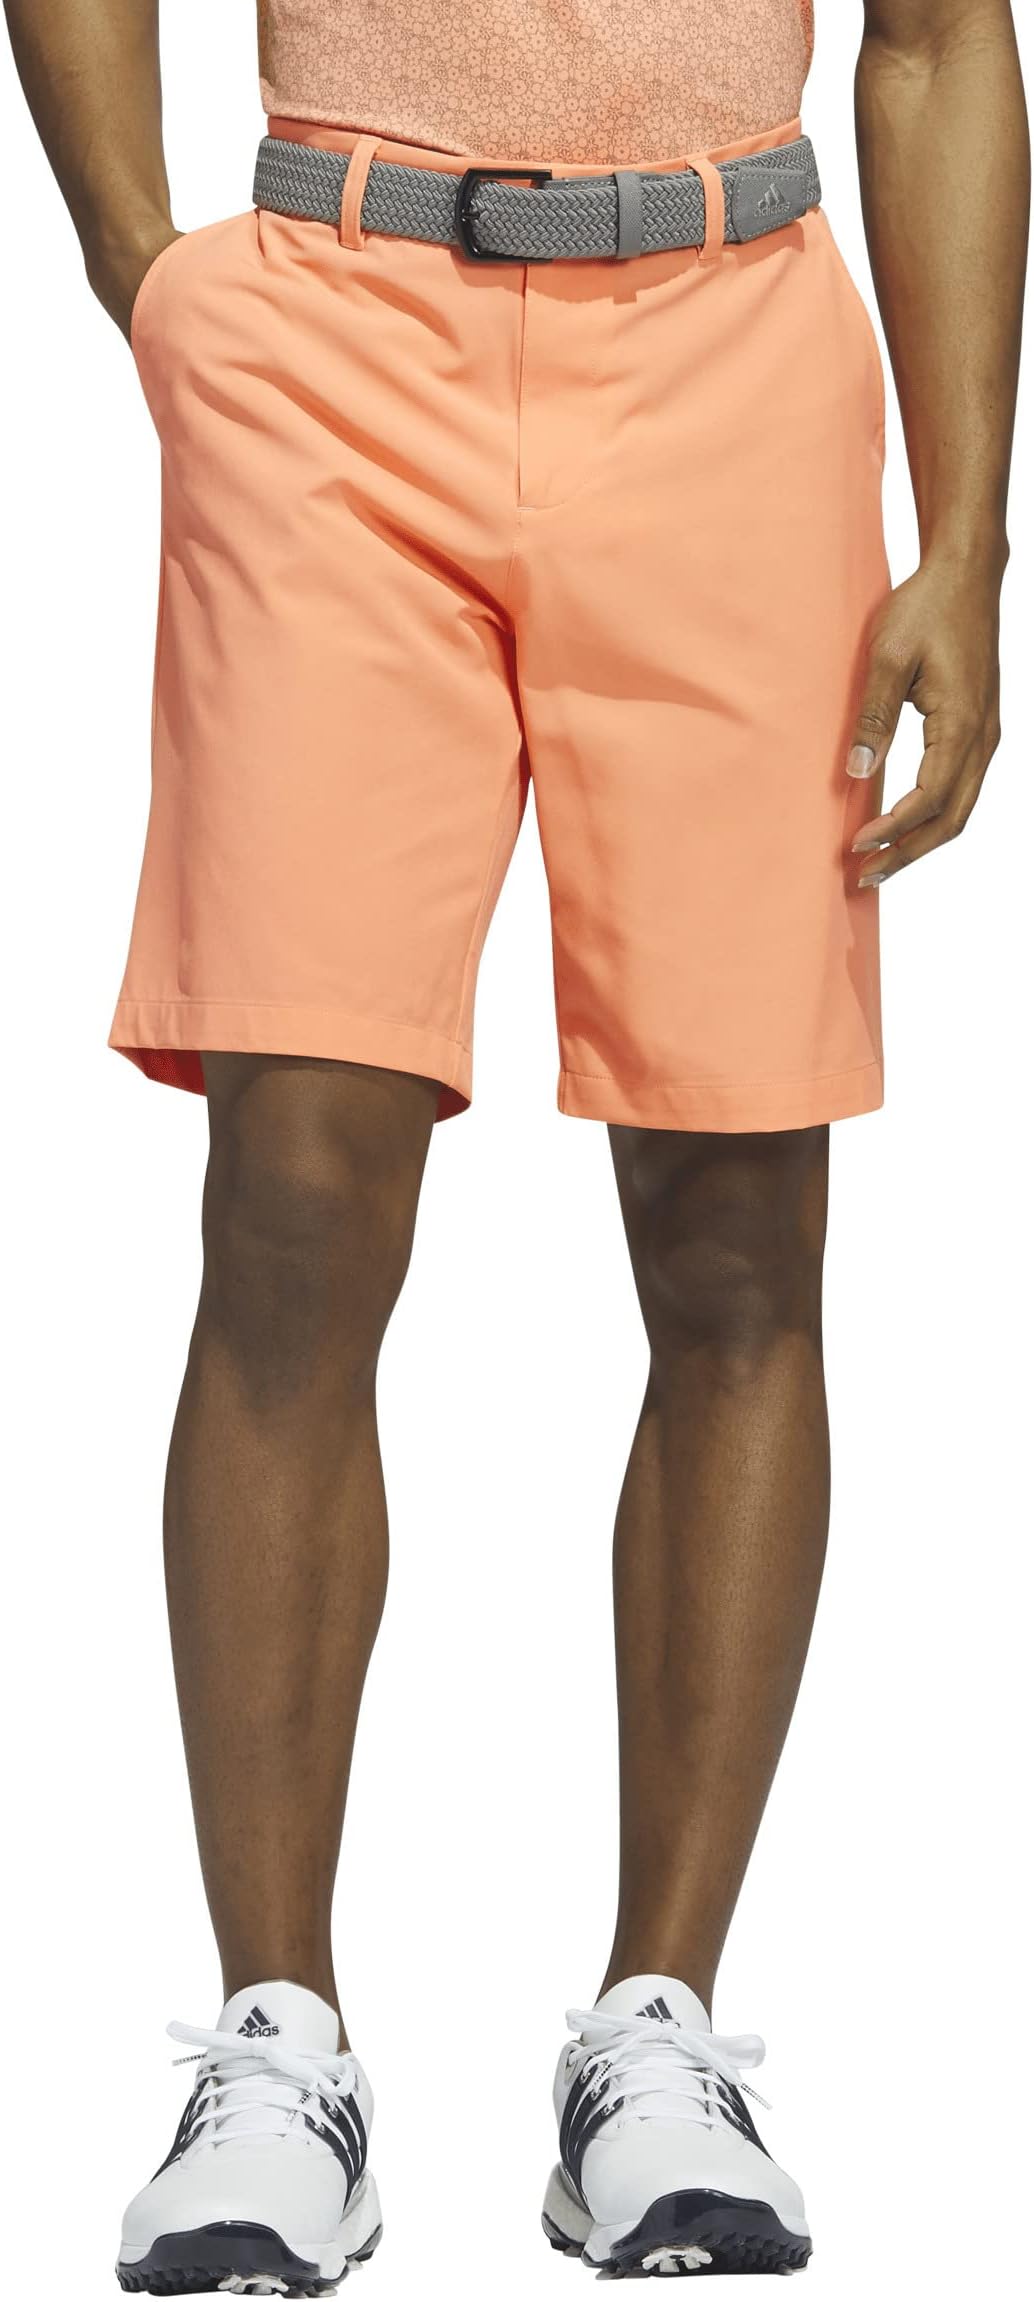 Шорты для гольфа Ultimate365 10 дюймов adidas, цвет Coral Fusion